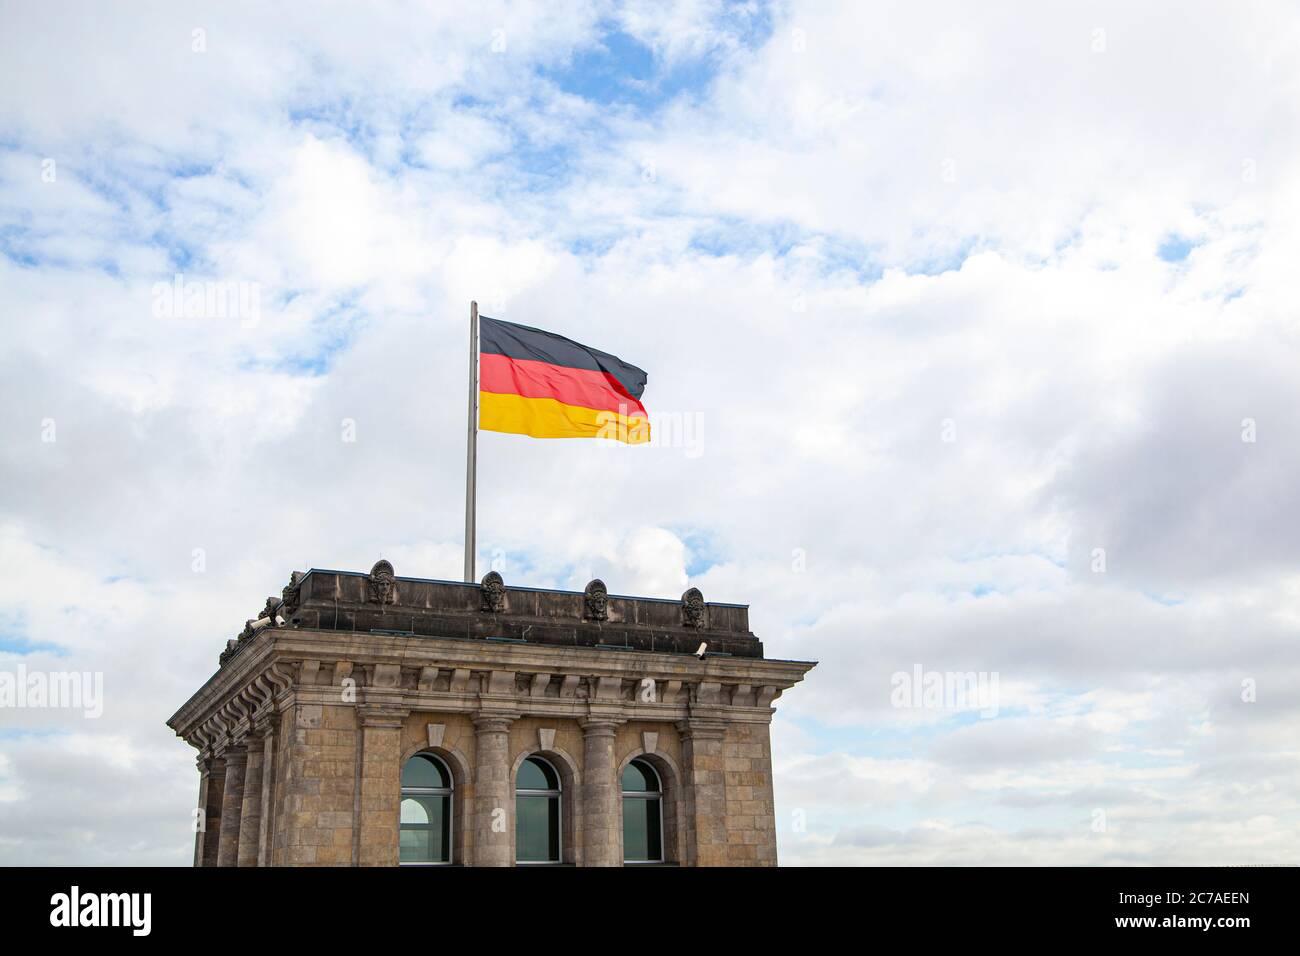 Un Reichstag du Parlement allemand Banque D'Images